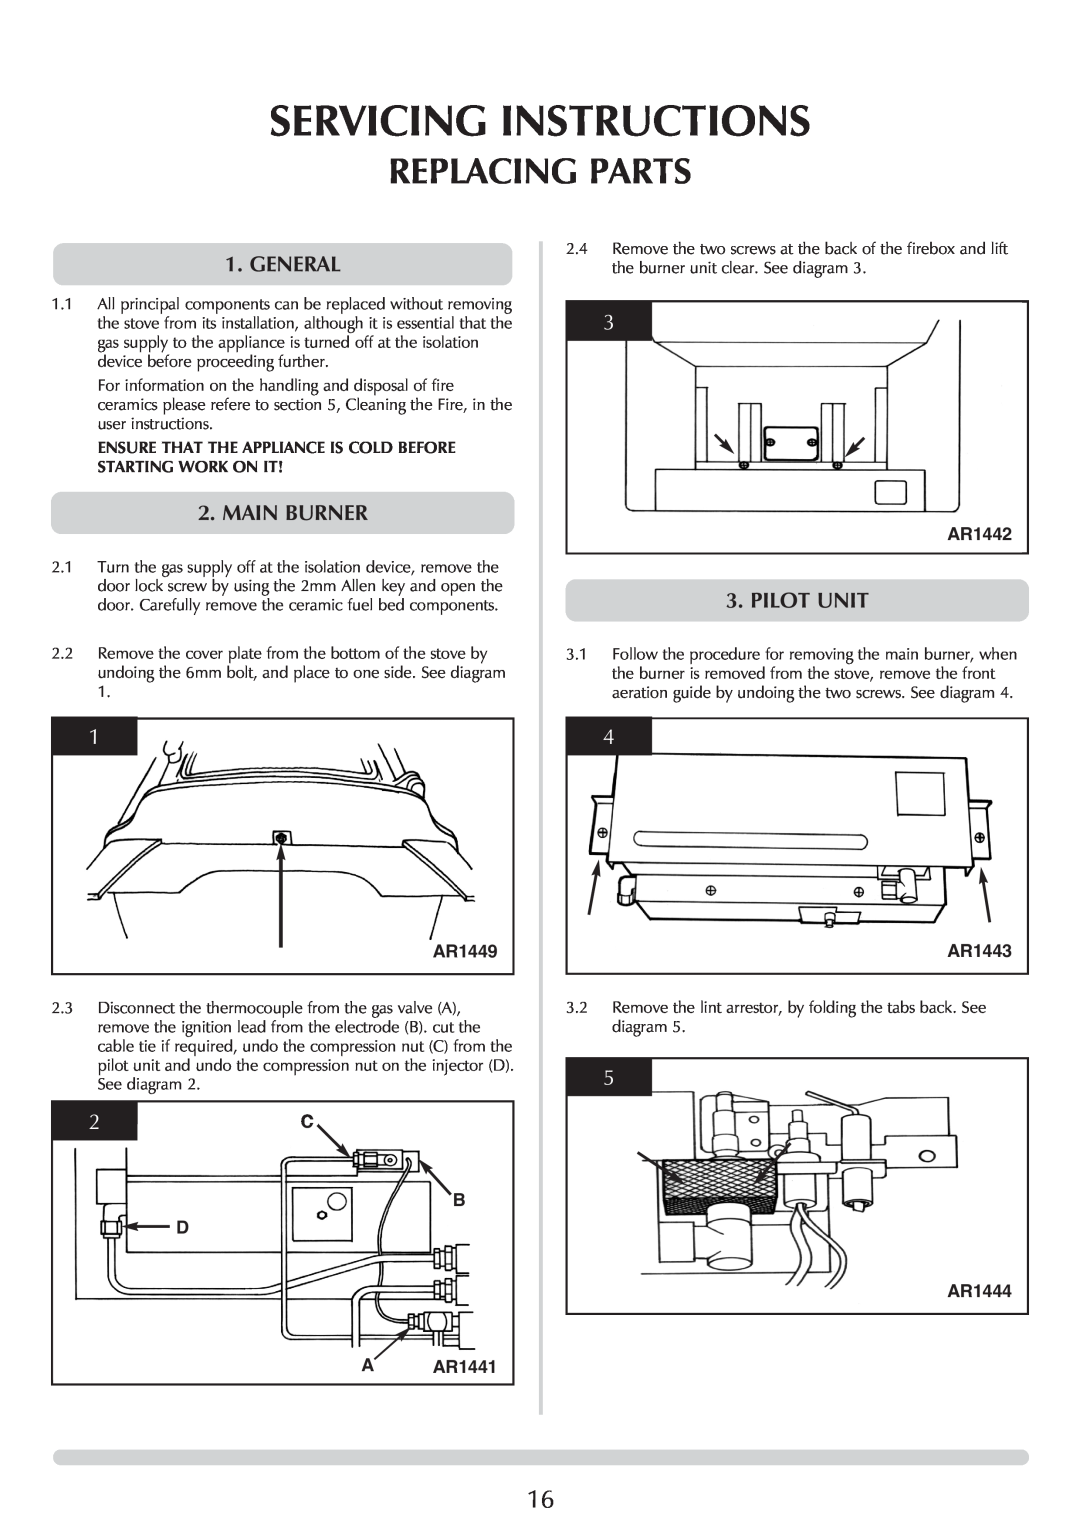 Stovax 5 manual Replacing Parts, Servicing Instructions, AR1449, B D A AR1441, AR1442, AR1443, AR1444 